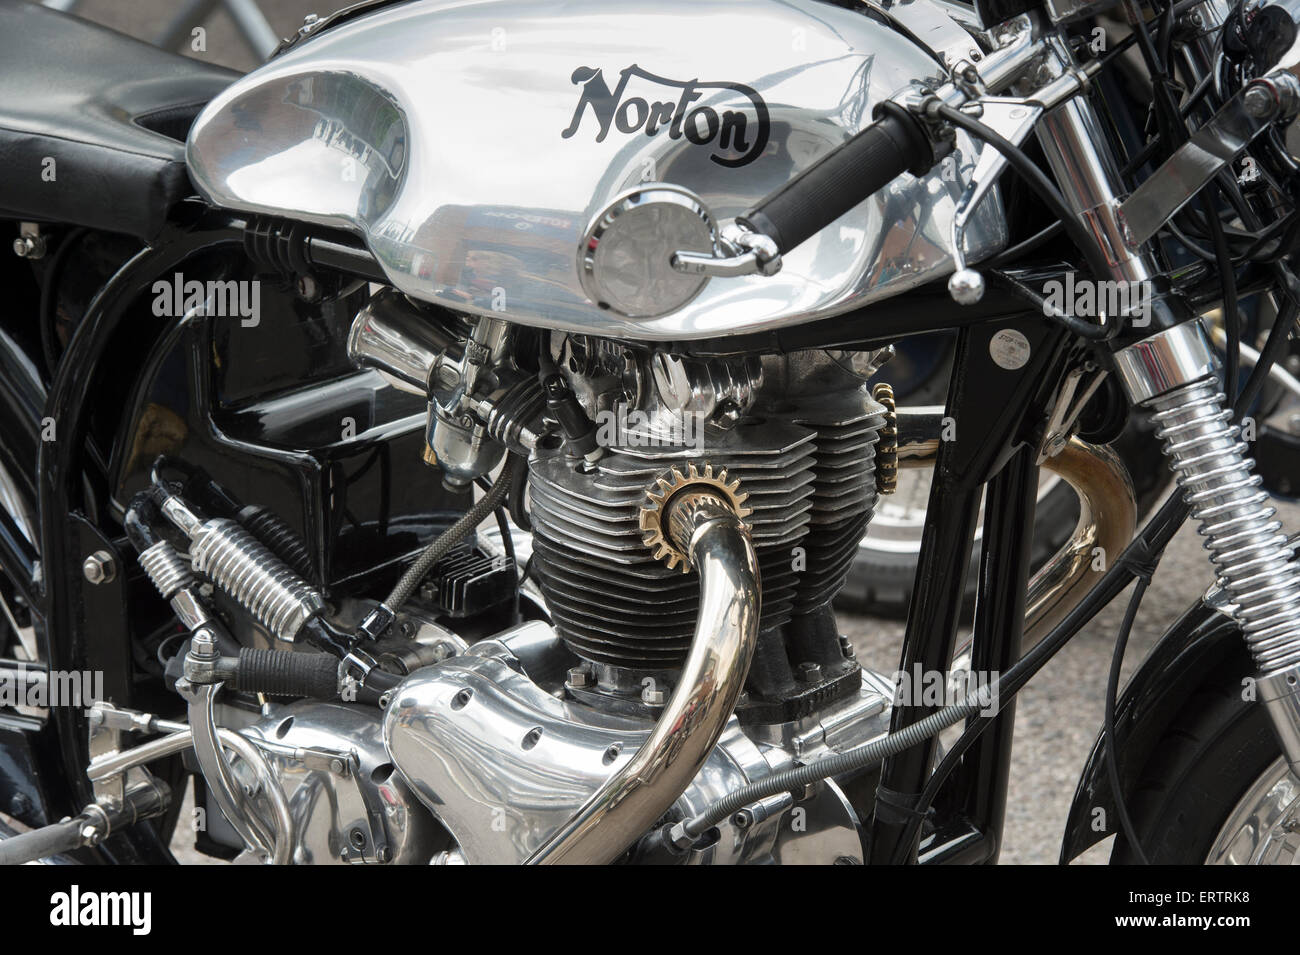 Norton Cafe Racer moto. Moto classique britannique Banque D'Images